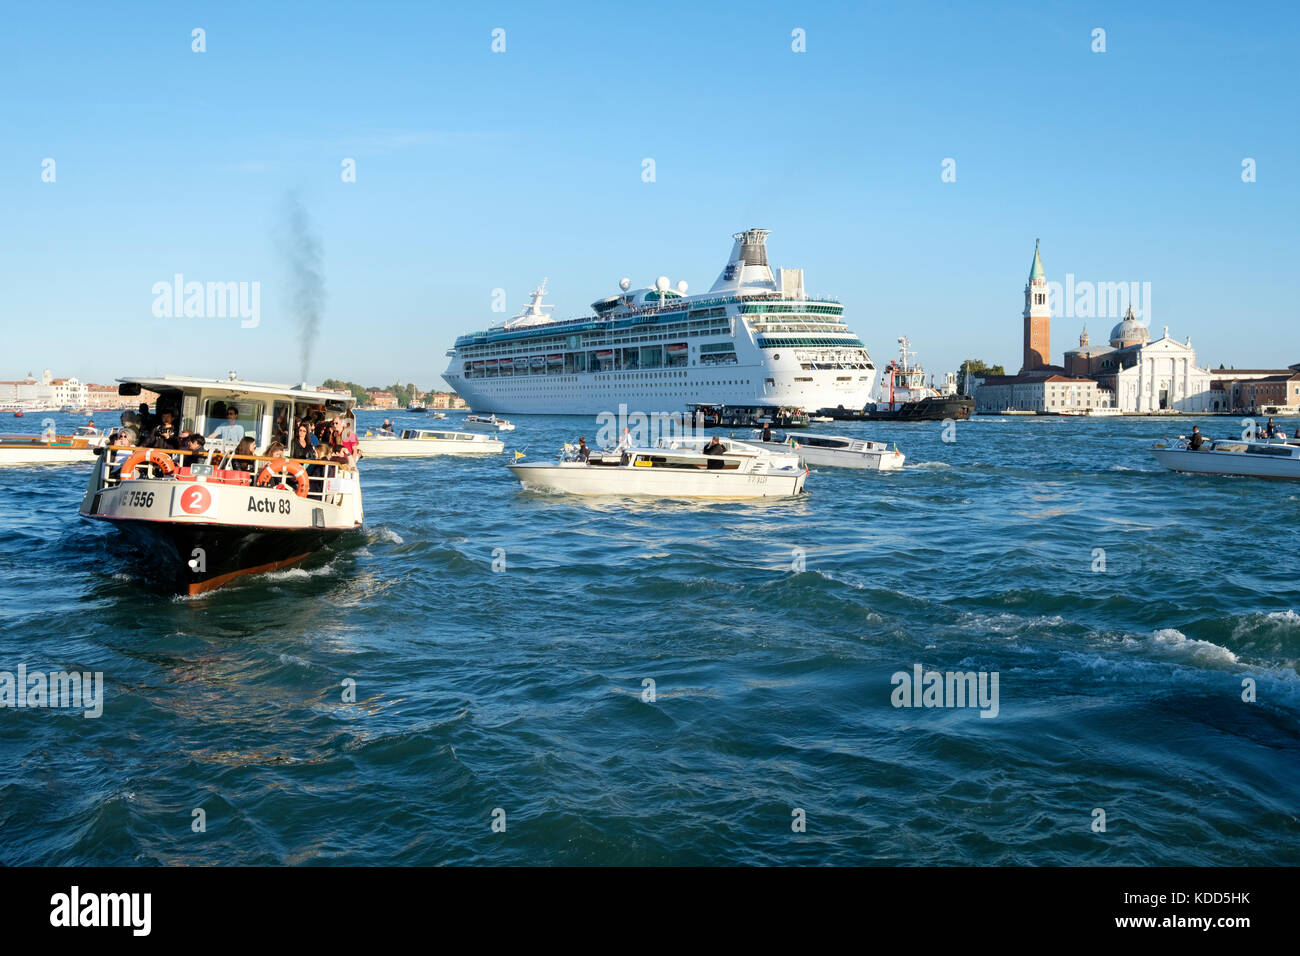 Congestion dans le lagon vénitien alors que le bateau de croisière Royal Caribbean, « Rhapsody of the Seas », passe devant San Giorgio Maggiore. Venise, Ital Banque D'Images